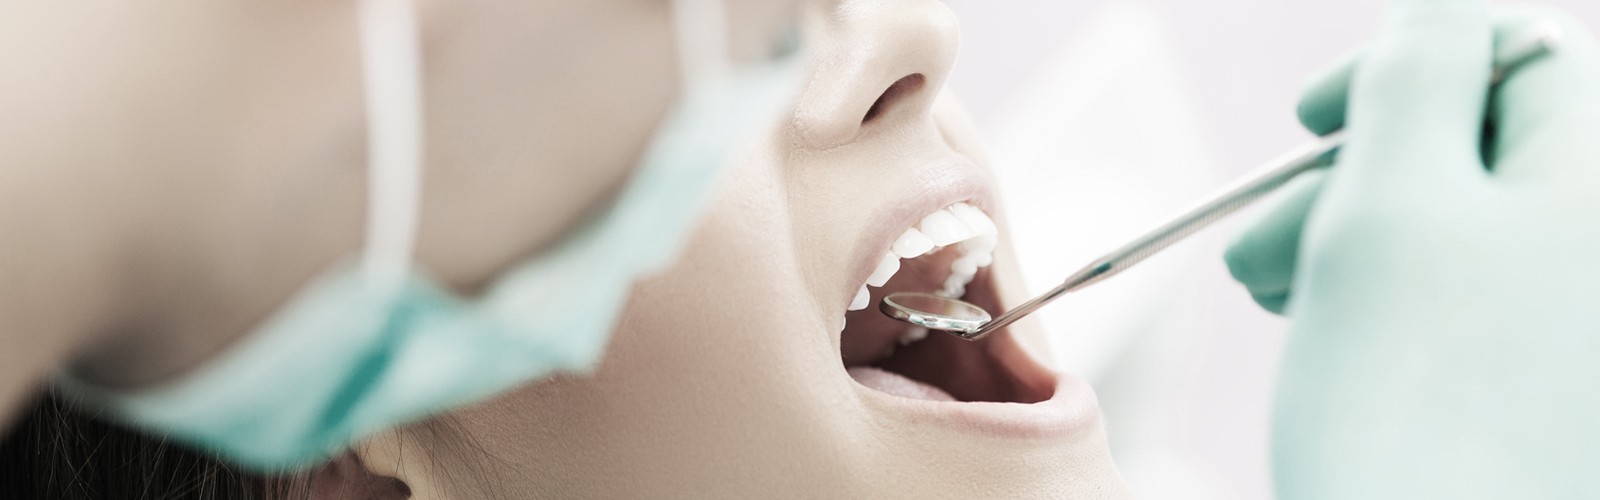 PhilosophieDer Erhalt Ihrer Zahngesundheit ist für uns das wichtigste Anliegen und hat für uns oberste Priorität. 